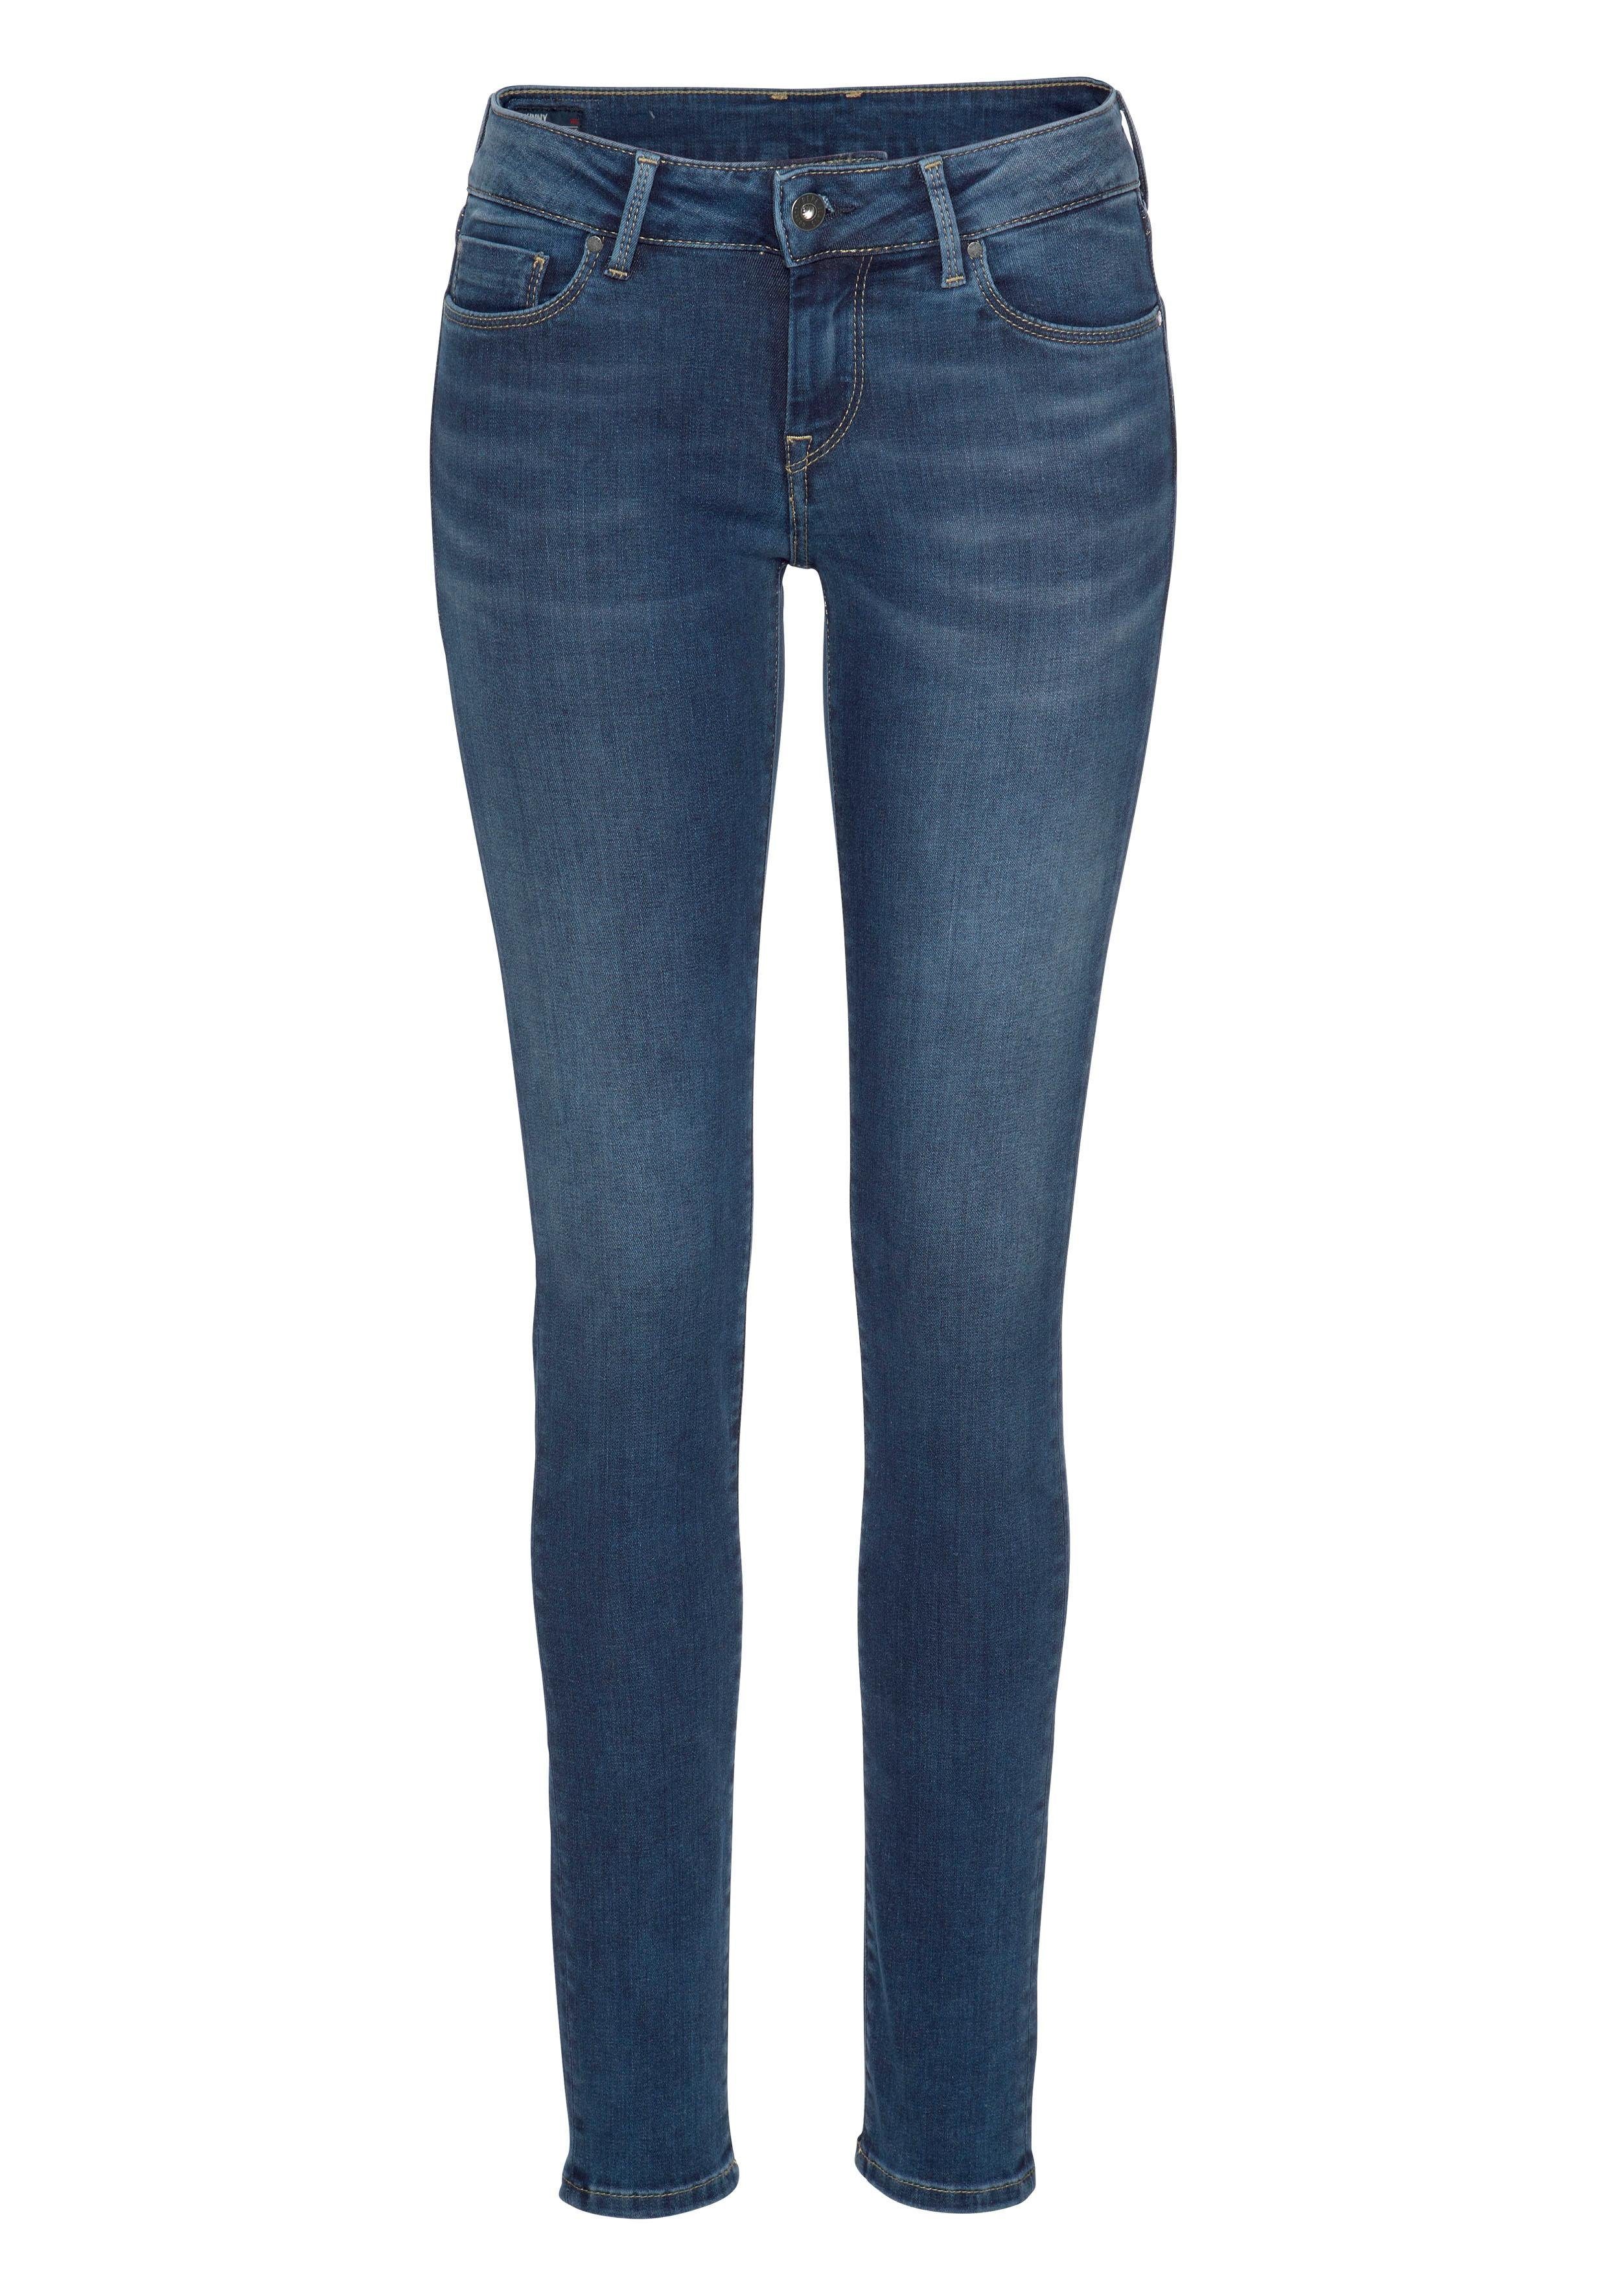 mit und im SOHO stretch Z63 Skinny-fit-Jeans Bund classic 1-Knopf Pepe 5-Pocket-Stil Stretch-Anteil Jeans